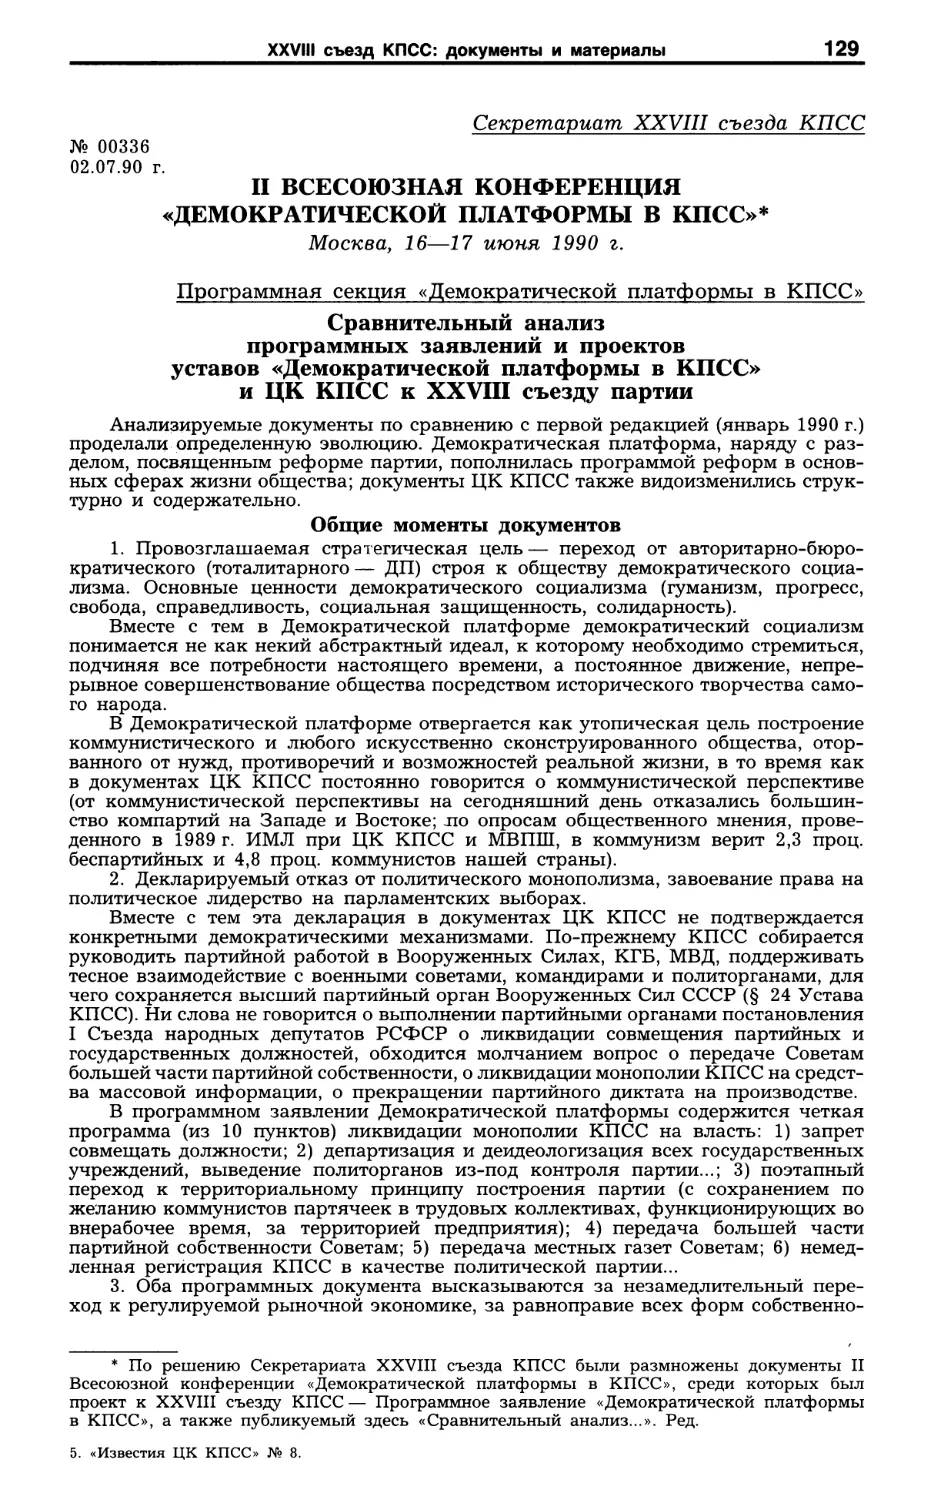 Документы II Всесоюзной конференции «Демократической платформы в КПСС». 16-17 июня 1990 г